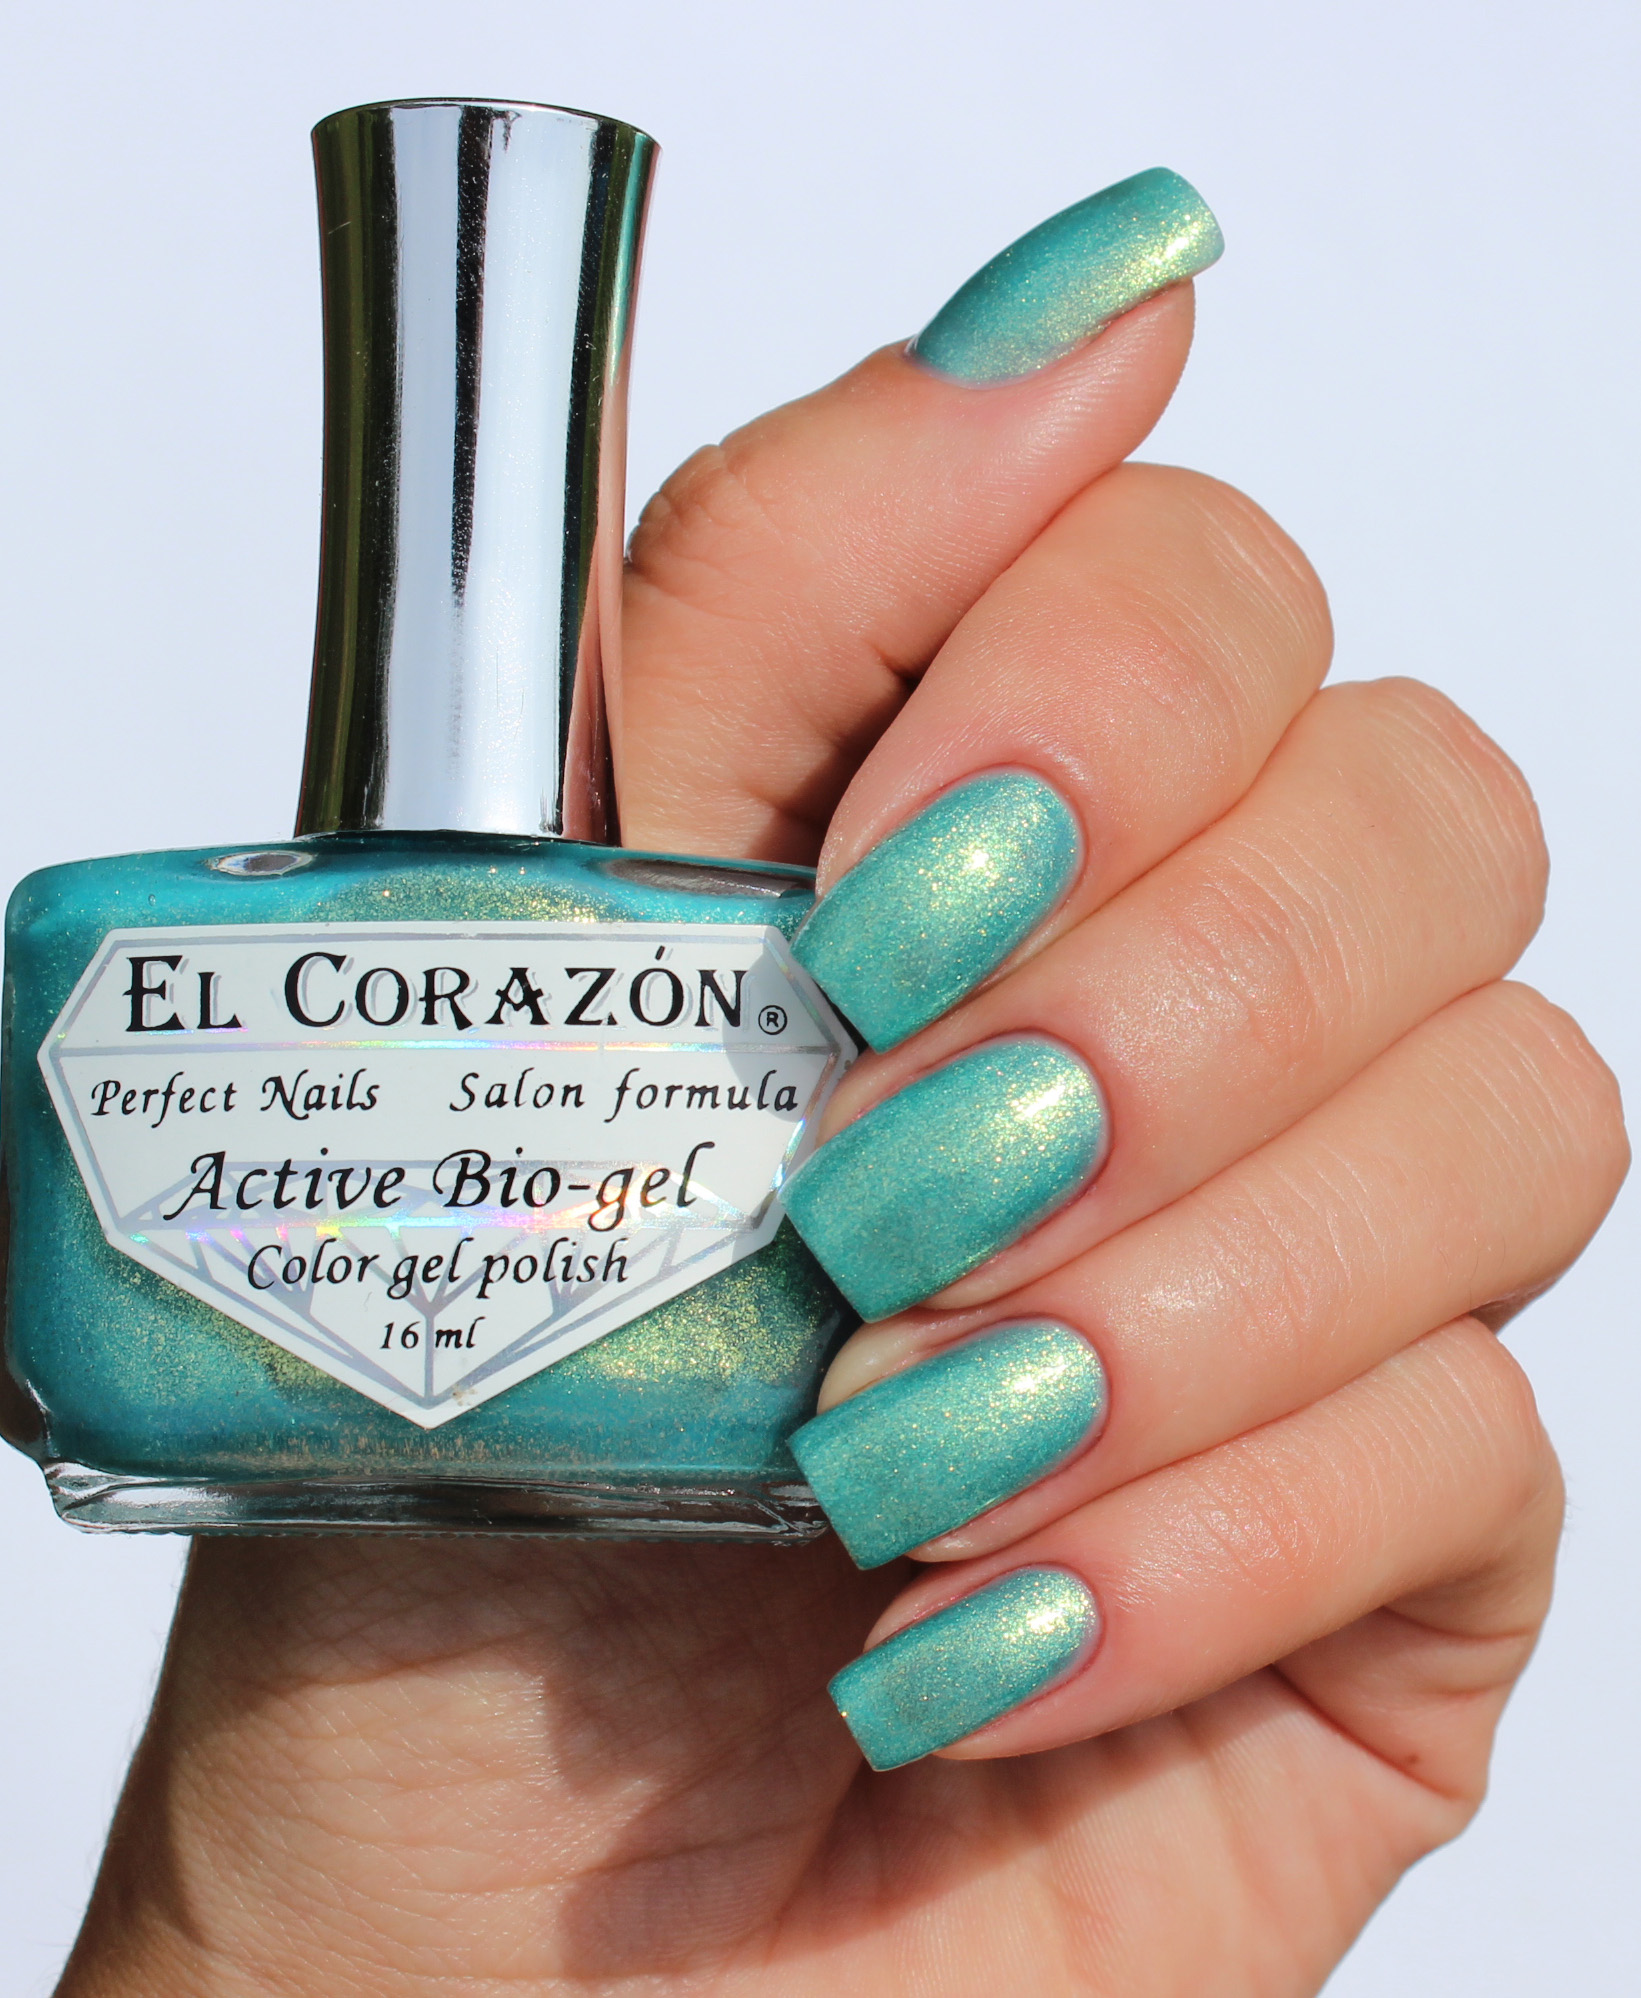 EL Corazon Active Bio-gel Color gel polish Magic №423/573 Magic sparkling sea